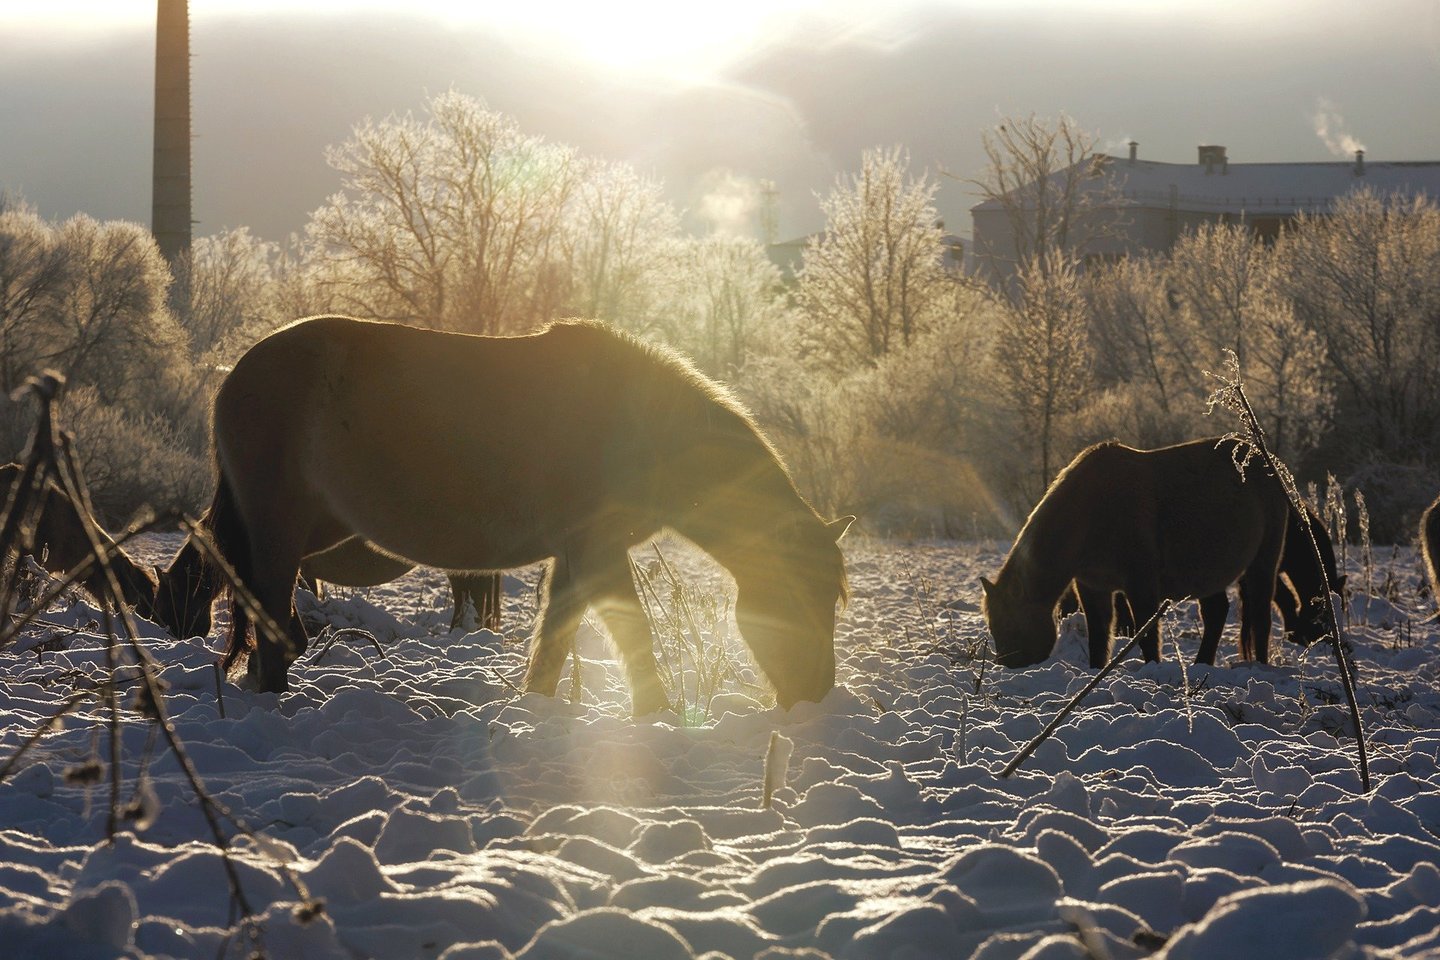 Laukiniai arkliai kiaurus metus ganosi Pilies saloje prie Jelgavos. O pajamų savininkas gauna iš apsilankančių turistų.<br>T.Bauro nuotr.